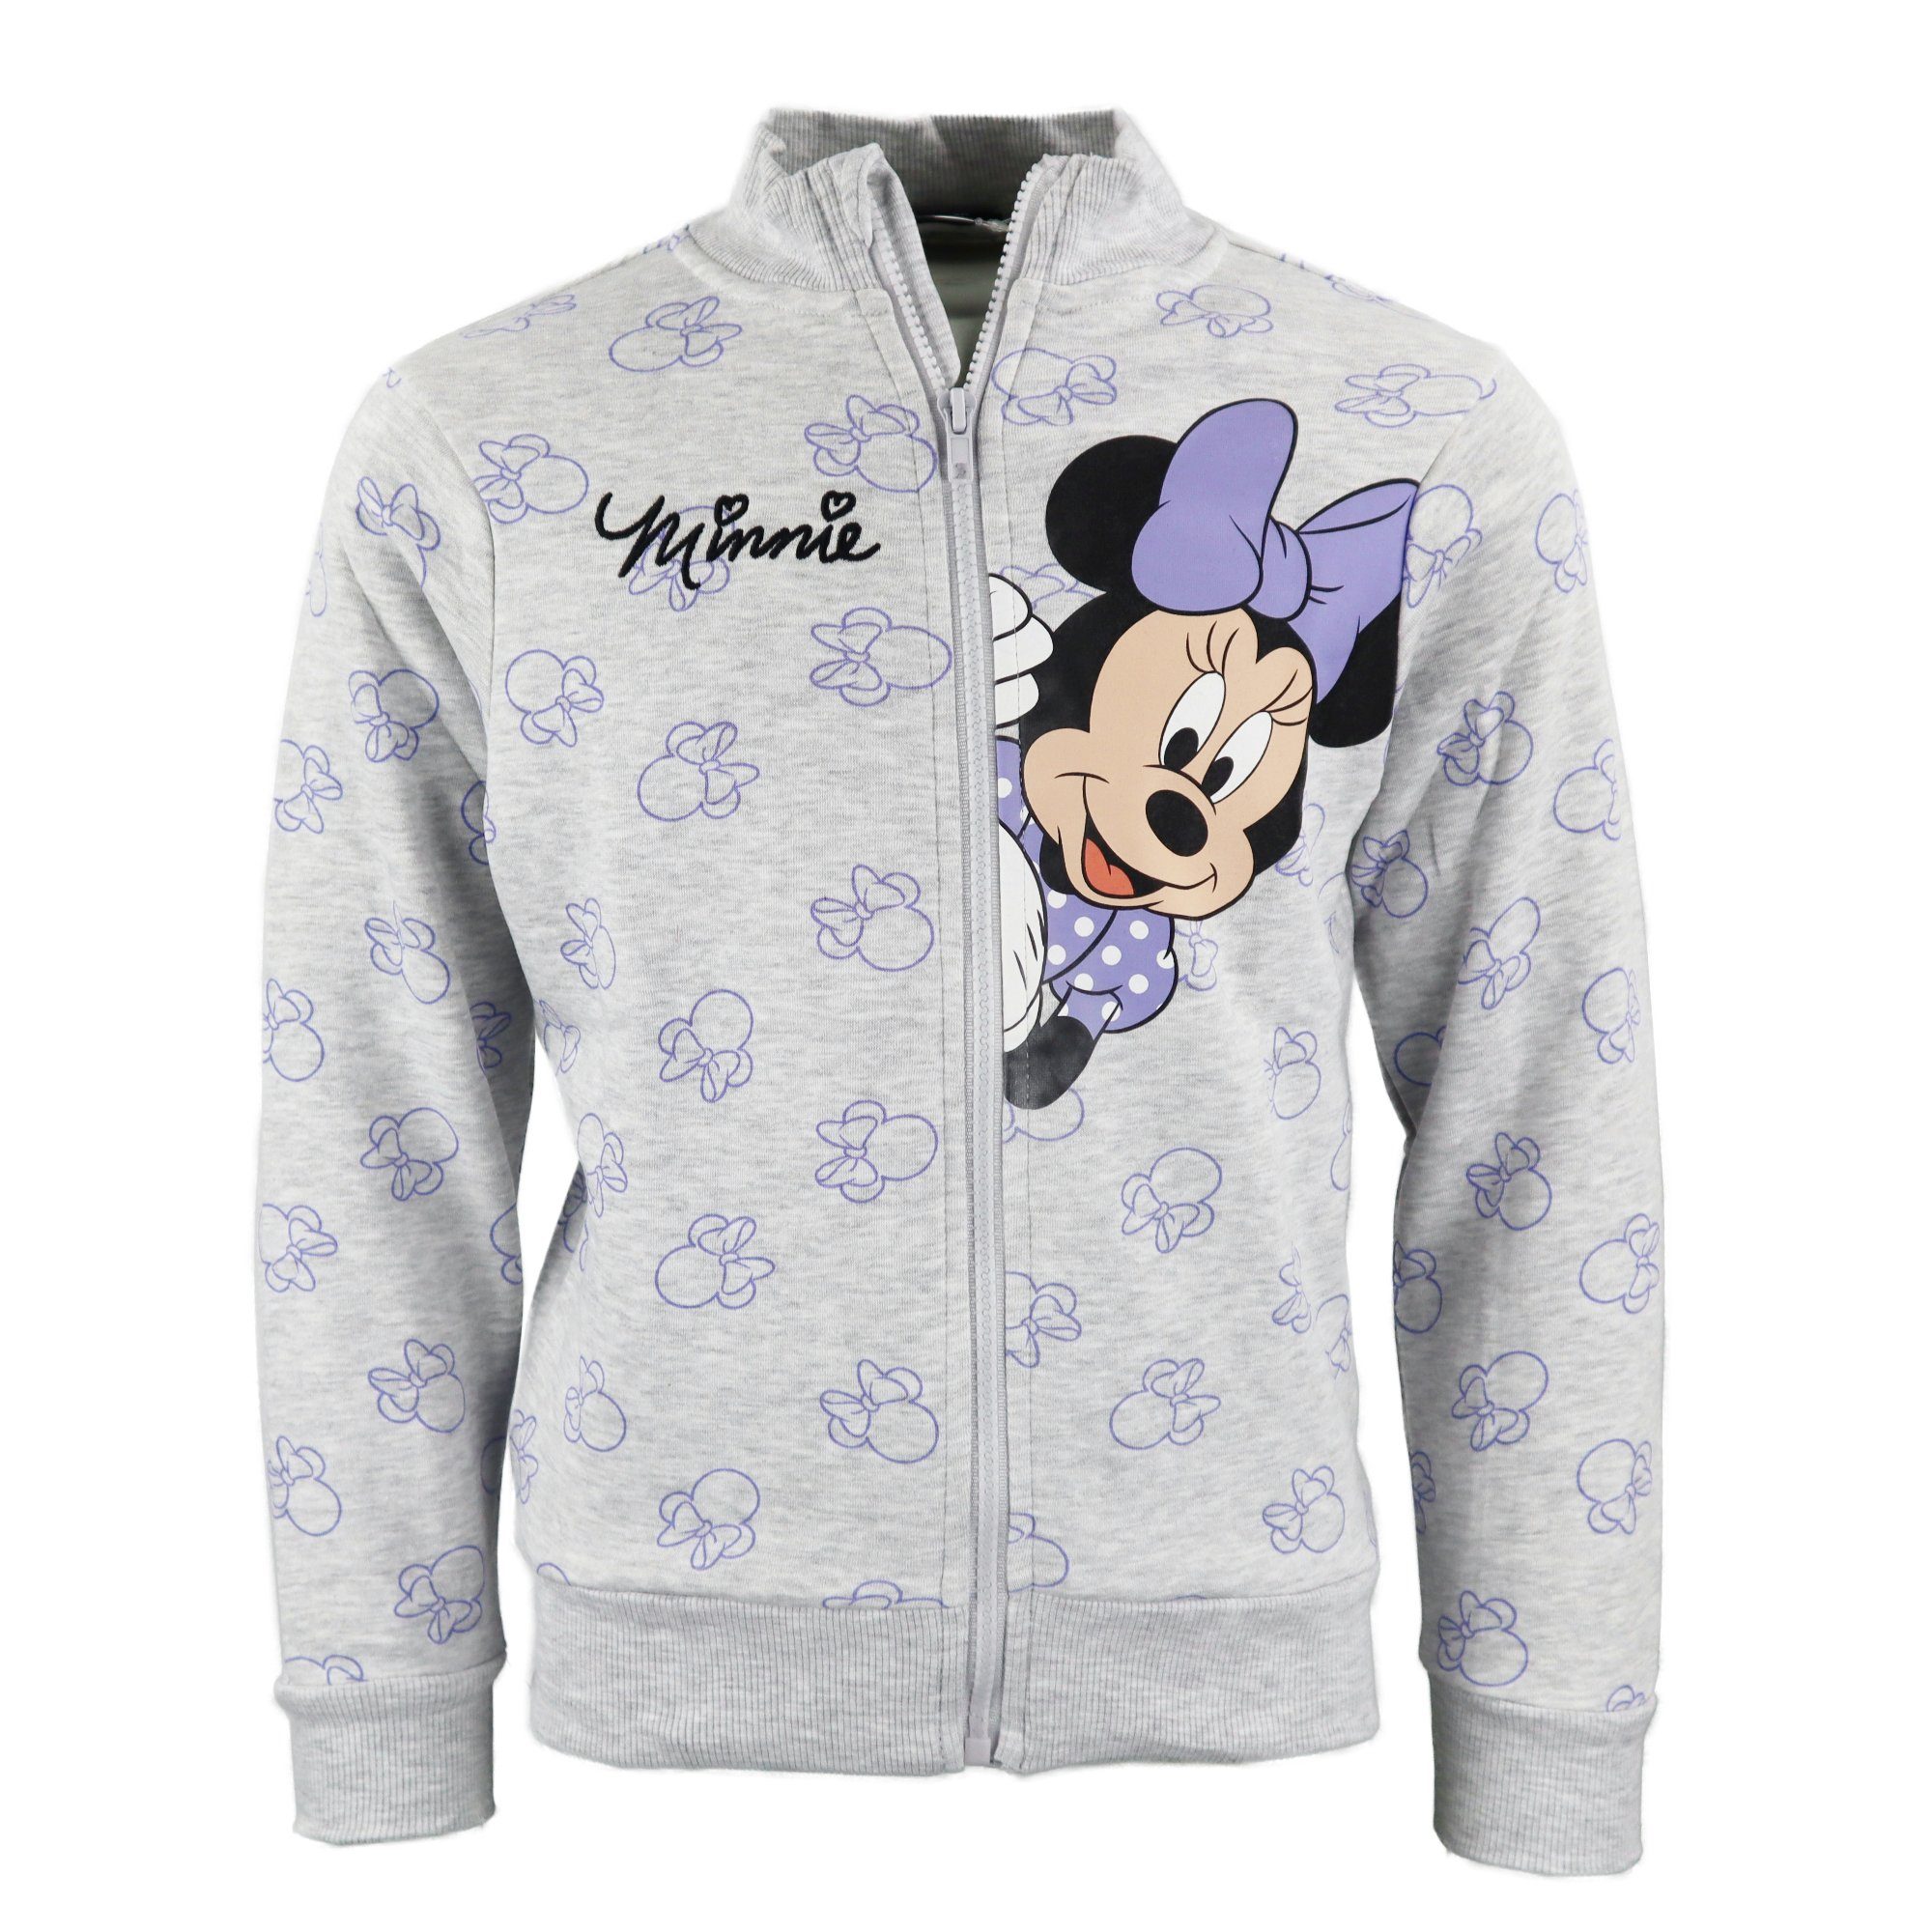 Disney Sweater Disney Minnie Maus Mädchen Kinder Reißverschluss Pullover Pulli Gr. 98-128 Grau